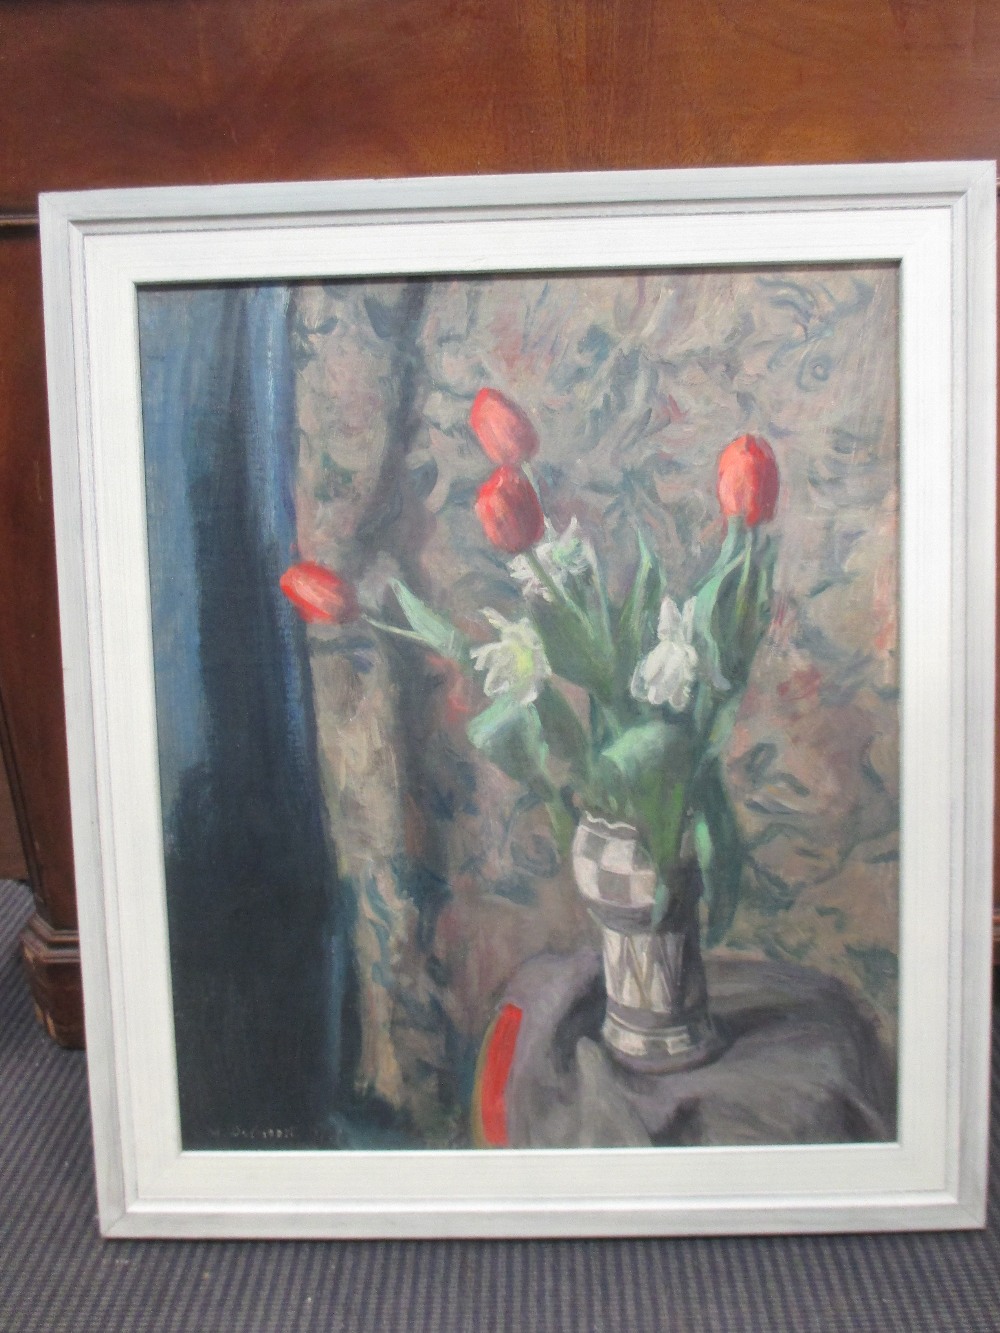 George Weissbort (British, 1928-2013), Still life of red tulips, signed lower left "G Weissbort - Bild 2 aus 3